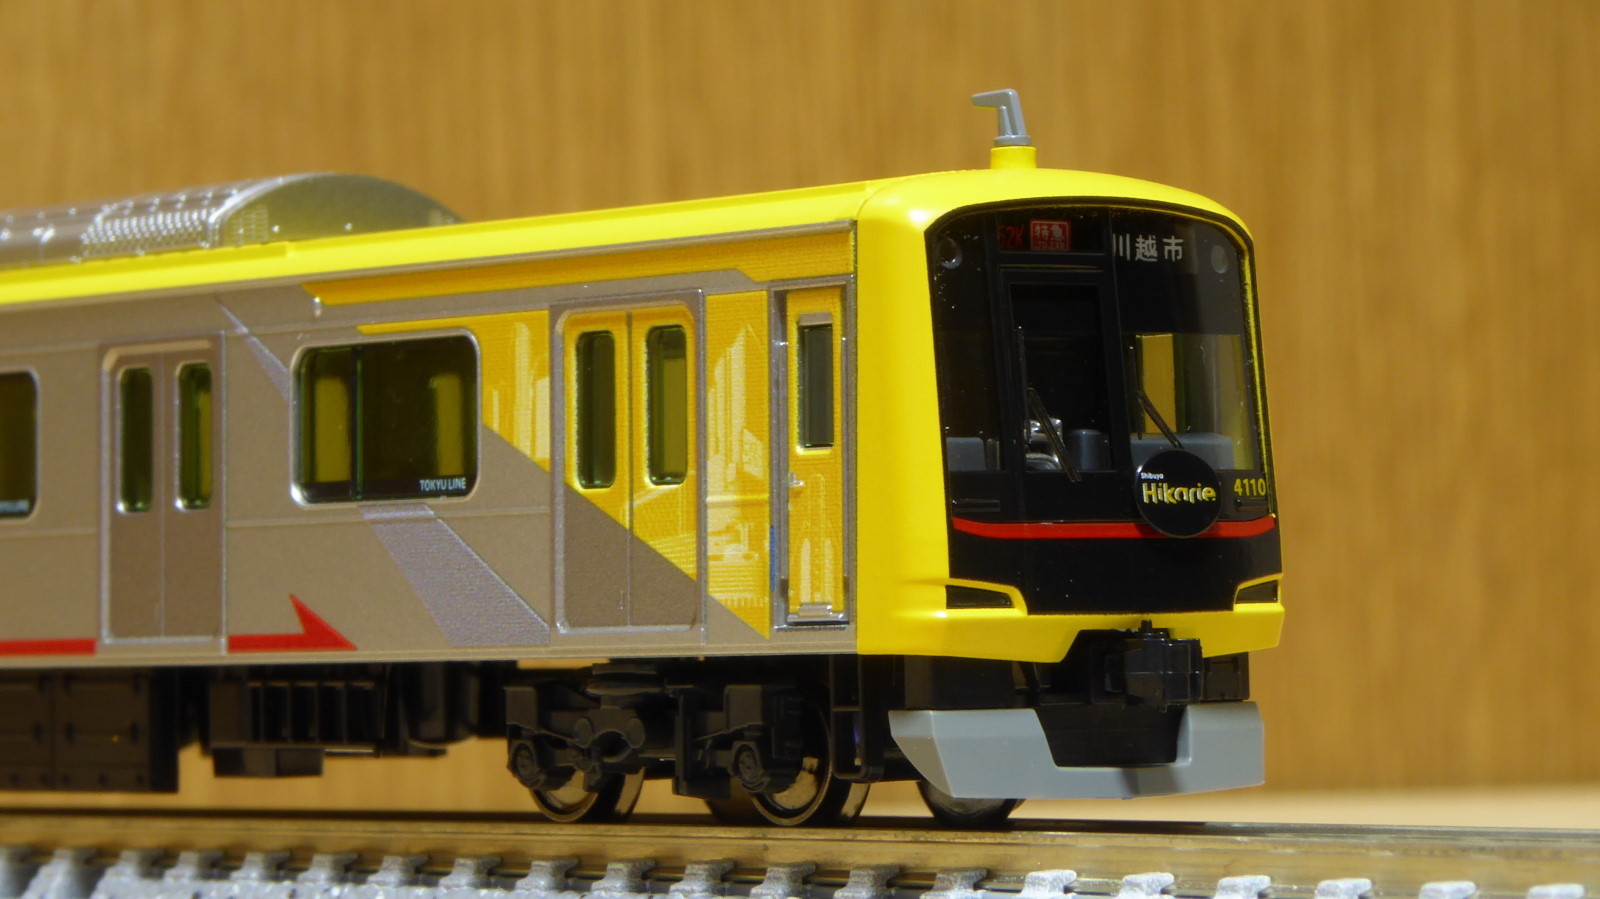 KATO 東急5050系4000番台 Shibuya Hikarie号 入線～その1～ | 気軽にNゲージ＠鉄道模型を楽しむ